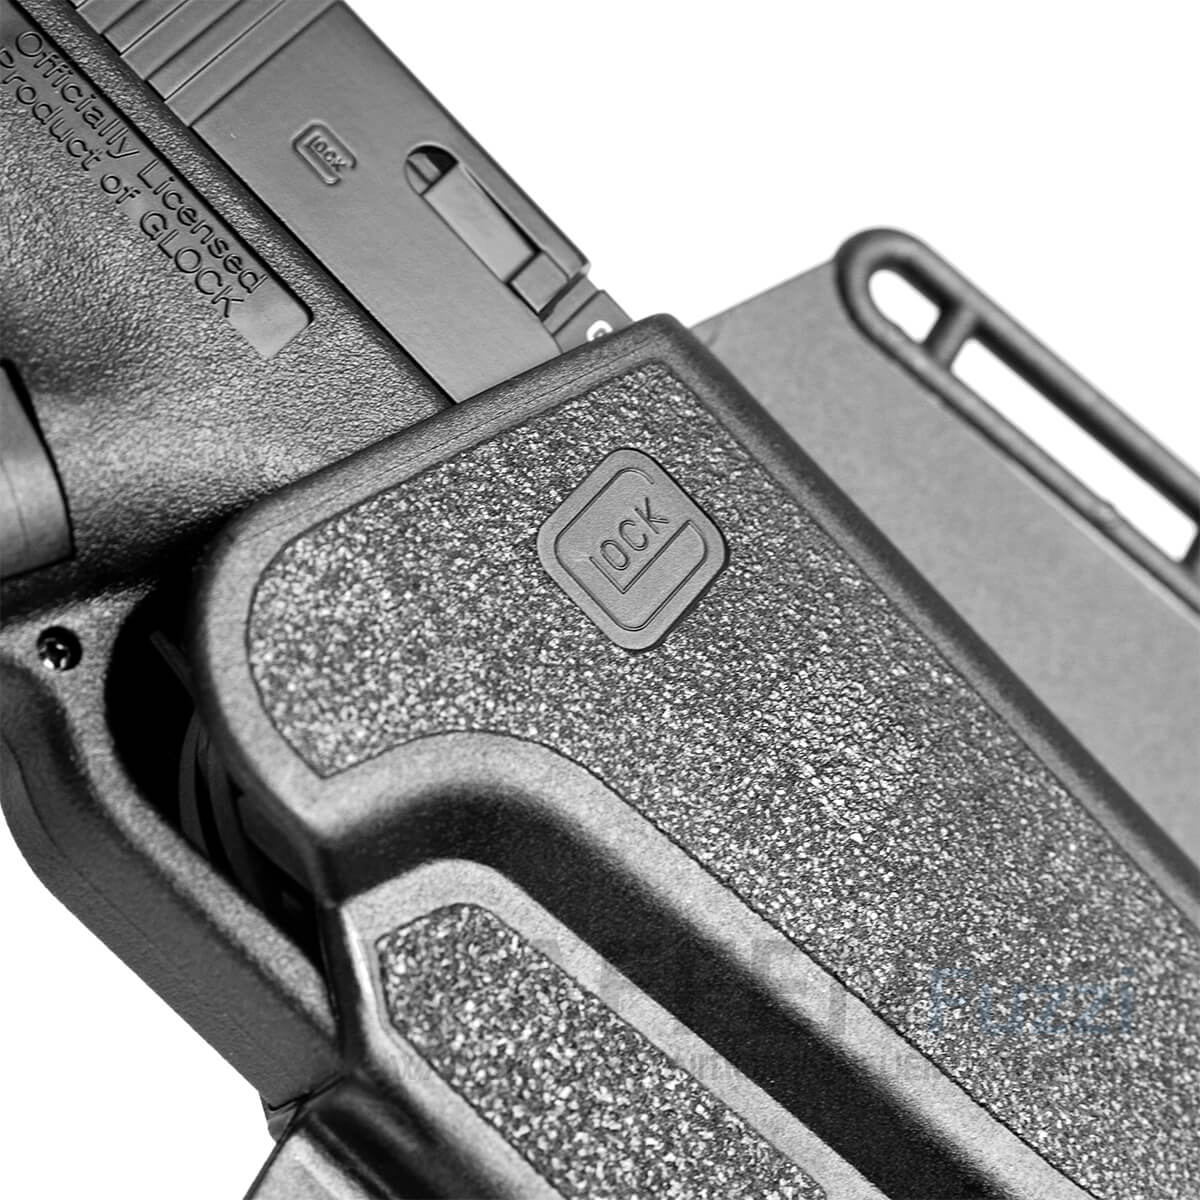 Kunststoffholster für Glock Pistolen für Kaliber 9mm / .40